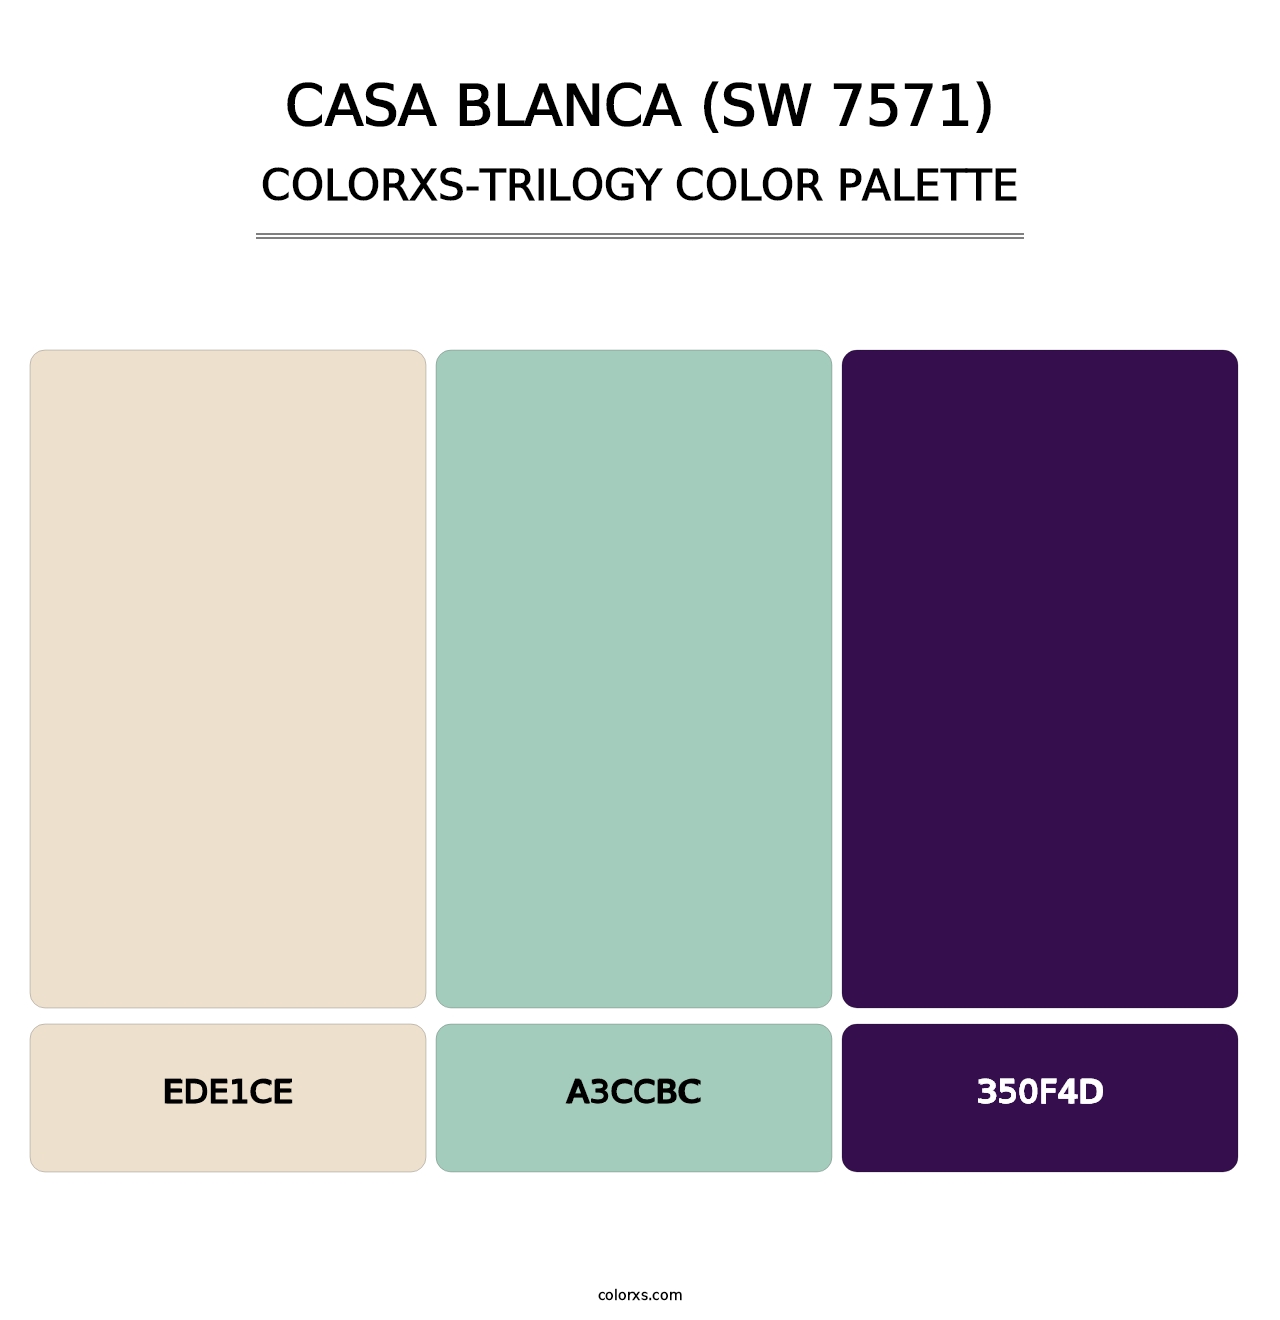 Casa Blanca (SW 7571) - Colorxs Trilogy Palette